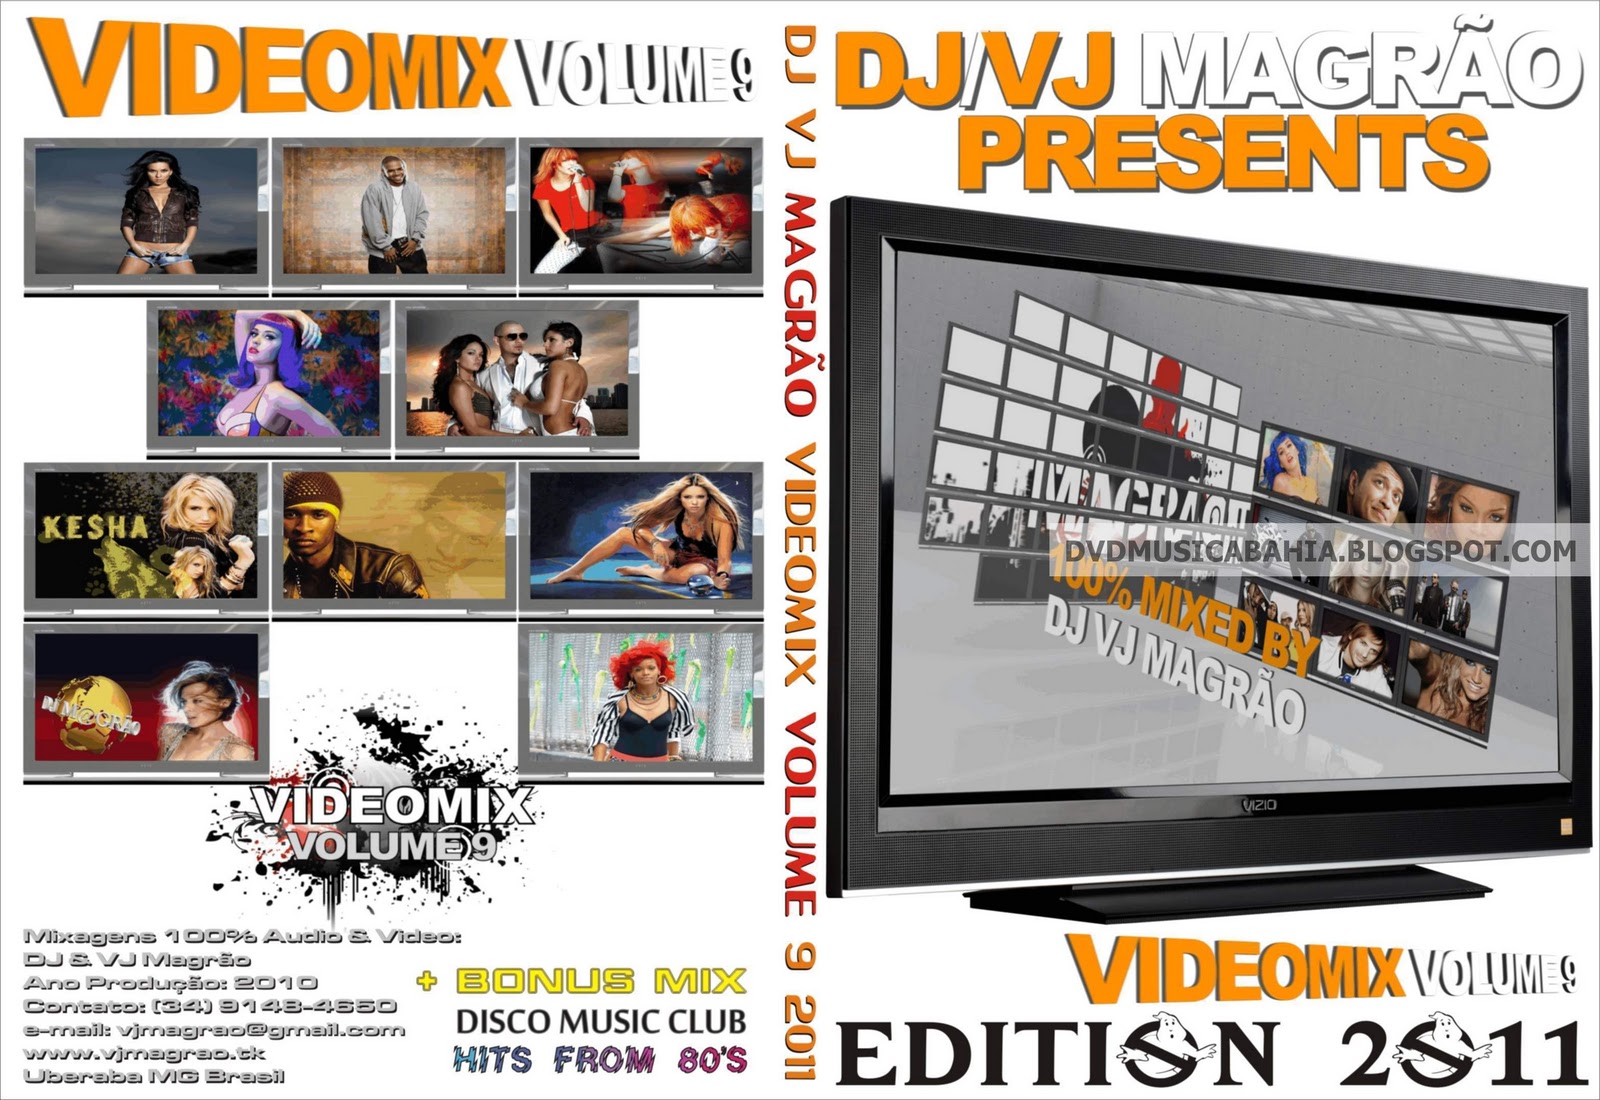 http://2.bp.blogspot.com/-VrlQ7_QpX1o/TZueH_GXmjI/AAAAAAAABlc/LXoRmj0GdsY/s1600/DJ+Magrao+-+Video+Mix+Volume+9+2011+-+655.jpg